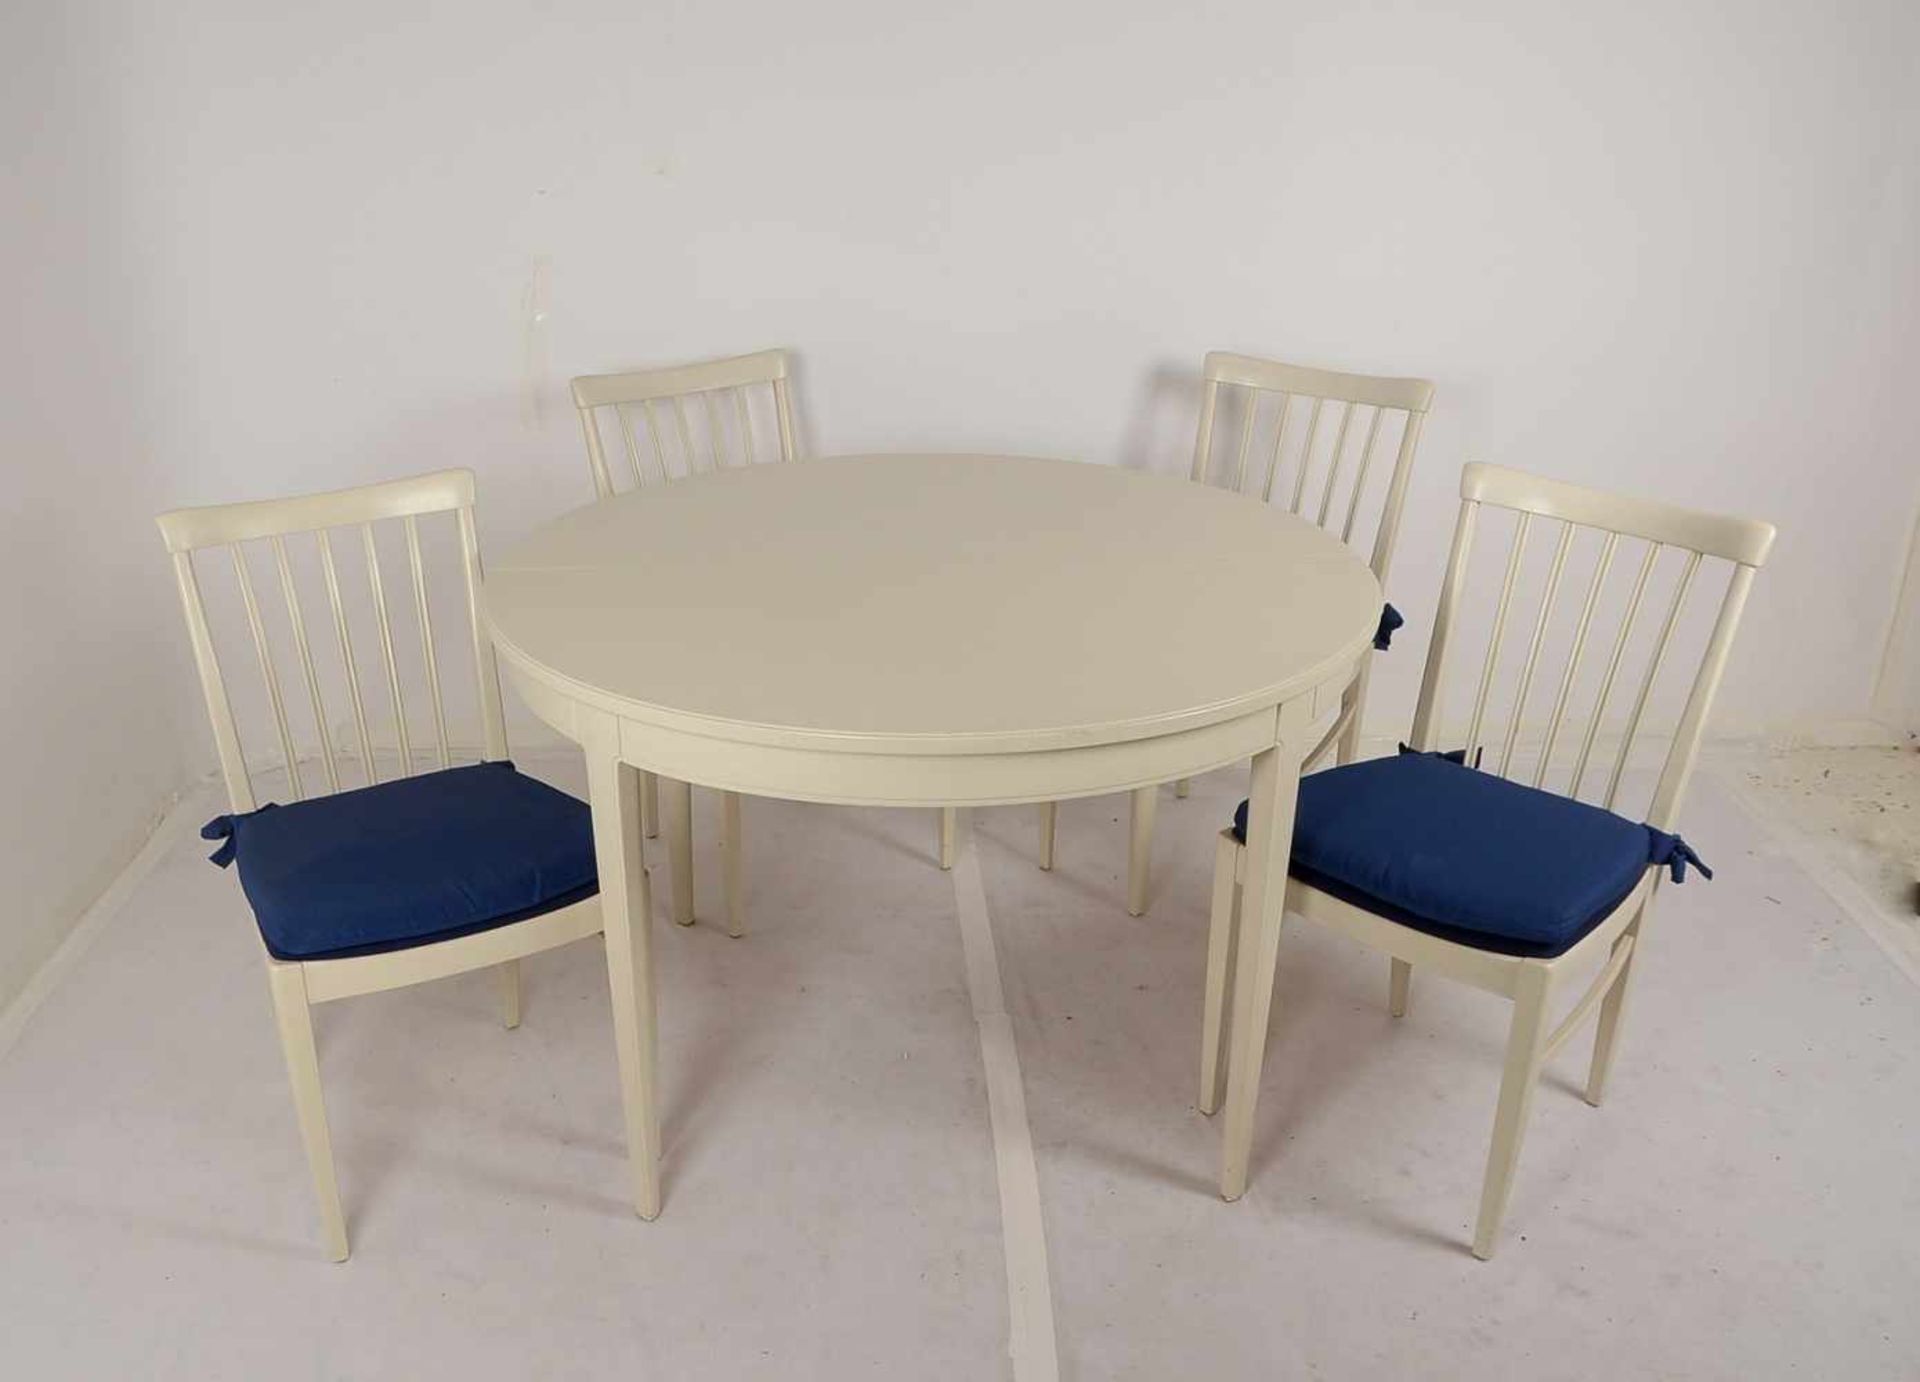 Bodafors/Schweden, Tisch und 4 Stühle, creme-weiß gefasst, Entwurf: Carl Malmsten, Tisch